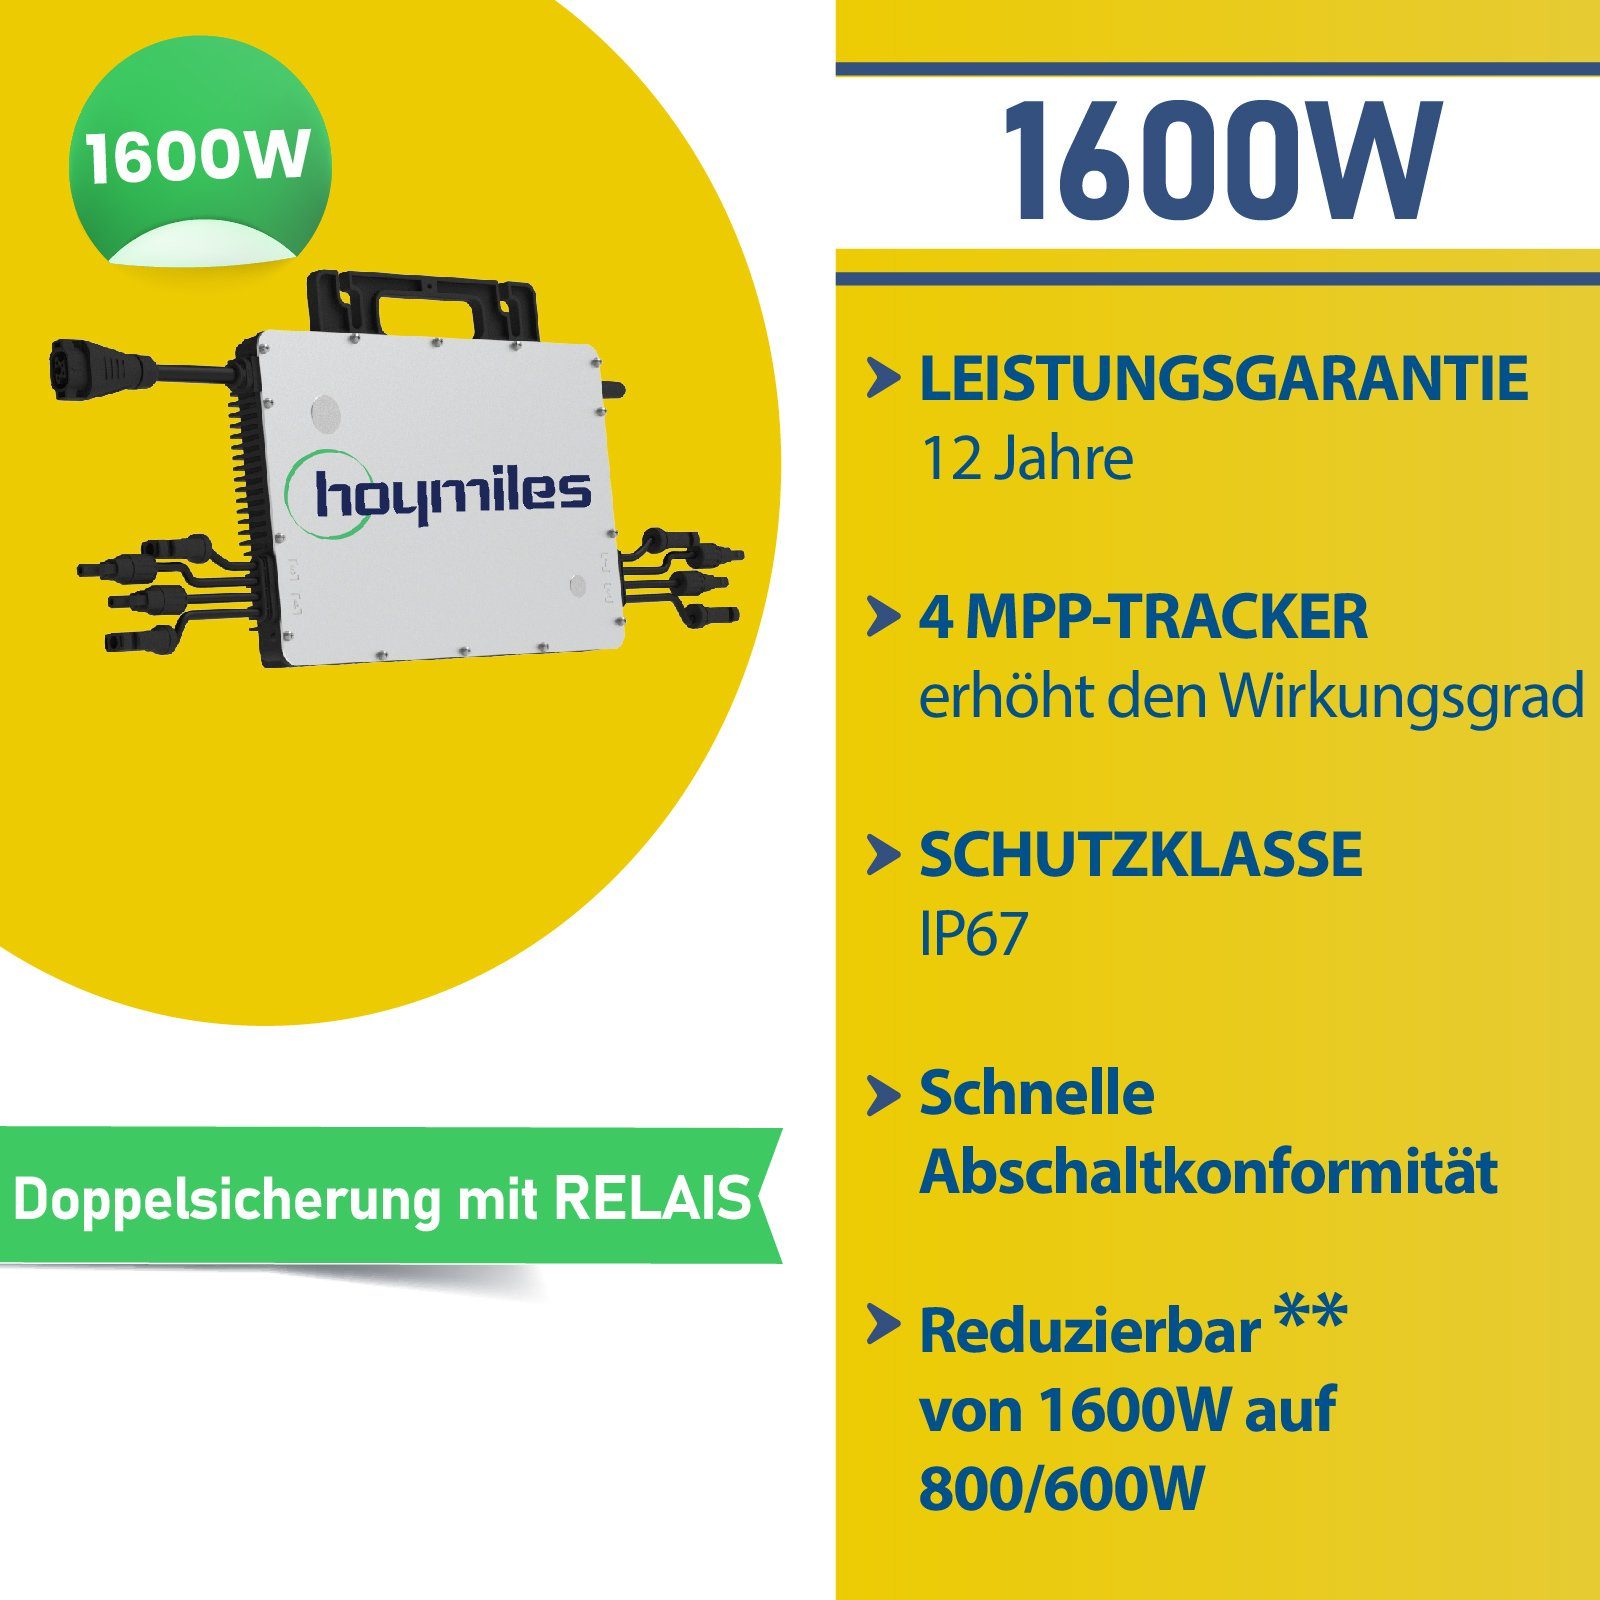 Solaranlage PV-Montage 1660W Stegpearl Photovoltaik Ziegeldach, HMS-1600-4T Balkonkraftwerk, DTU-WLite-S Wechselrichter, Hoymiles